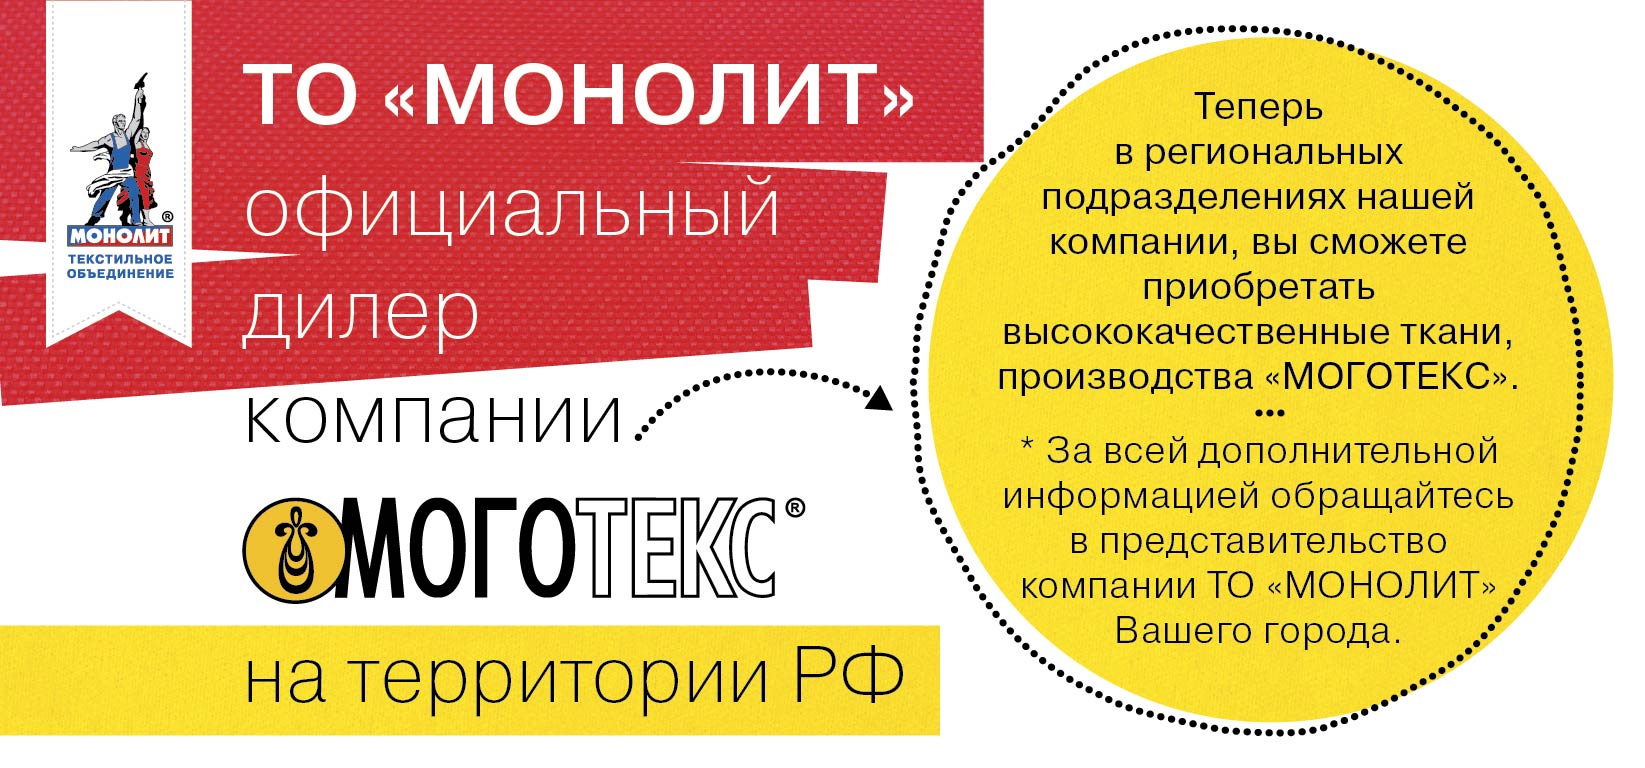 ТО «Монолит» - официальный дилер компании "Моготекс" на территории РФ